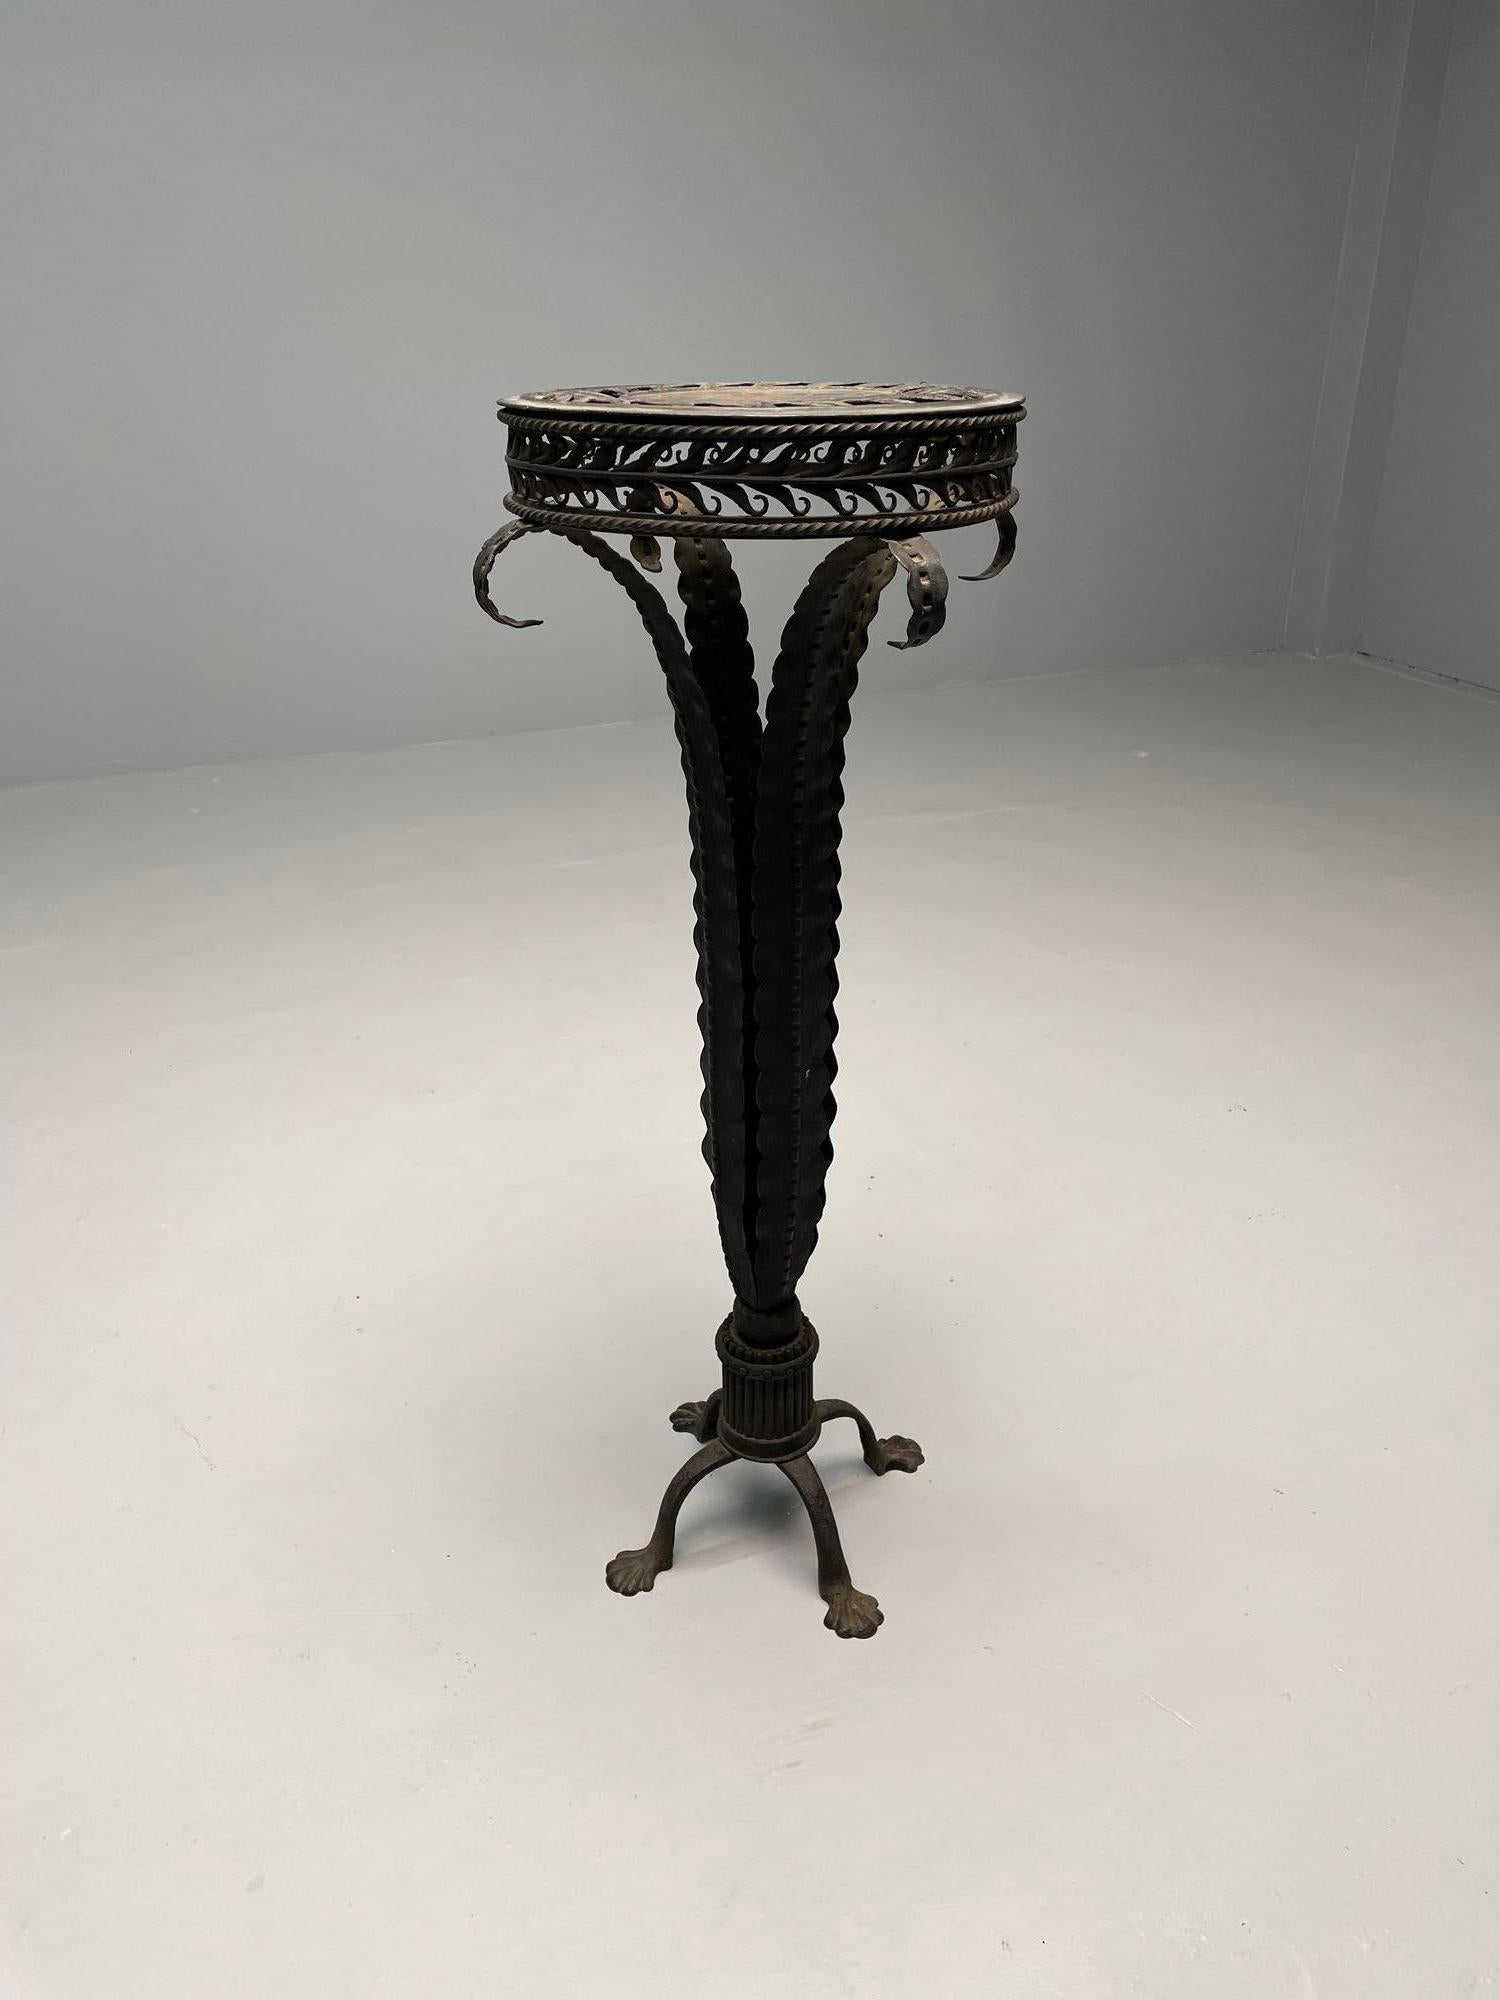 A ebony wrought iron pedestal. Indoor or outdoor. Circa 1920s
H 44.75 Día 18